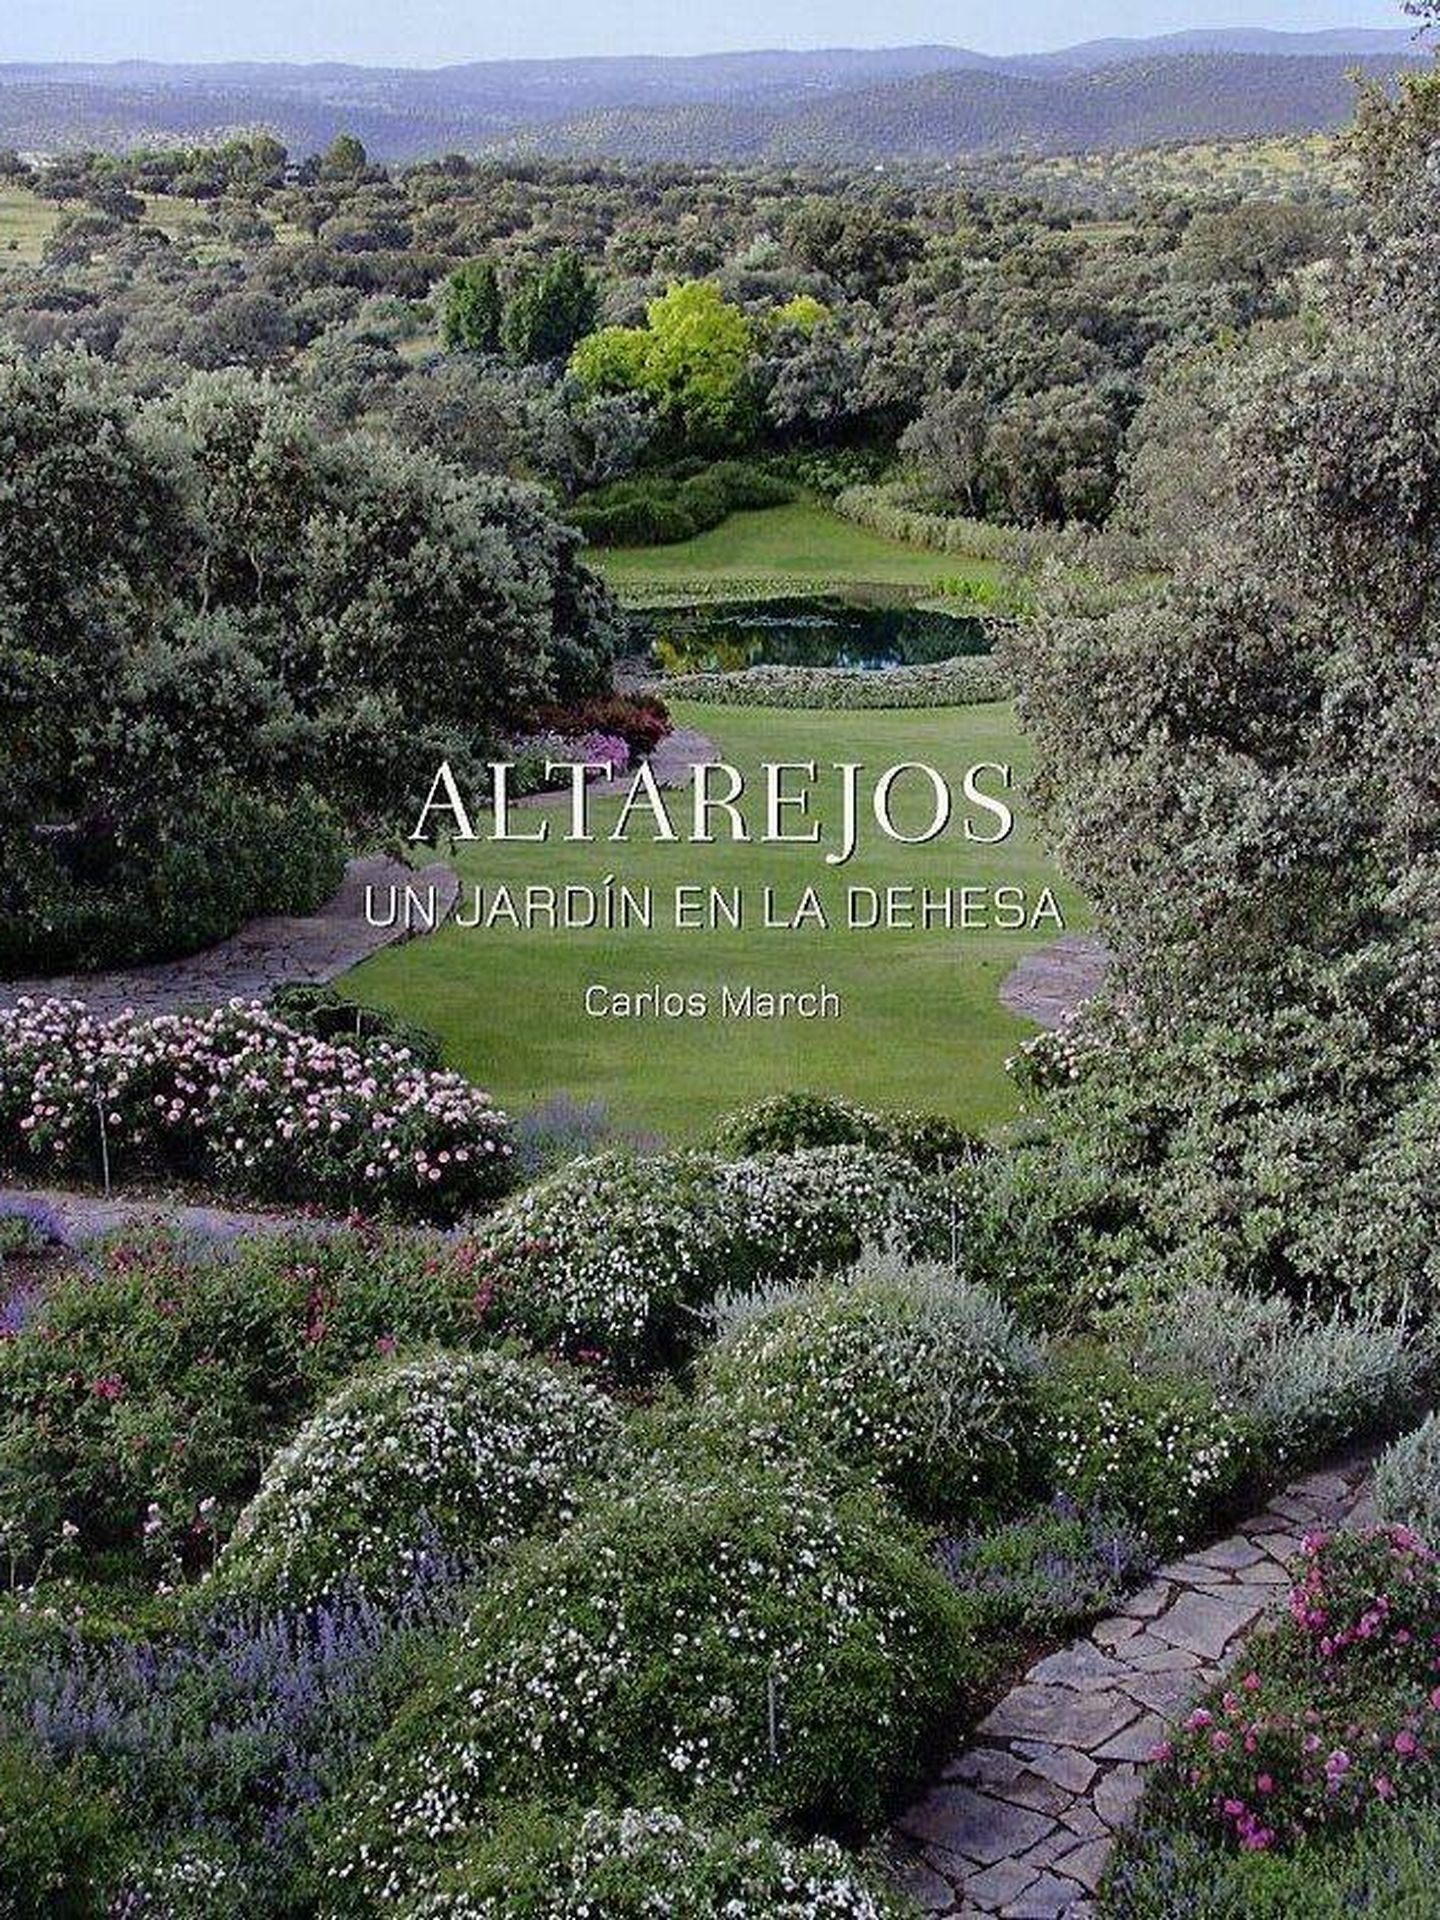  Portada del libro 'Altarejos. Un jardín en la Dehesa', de Carlos March. 